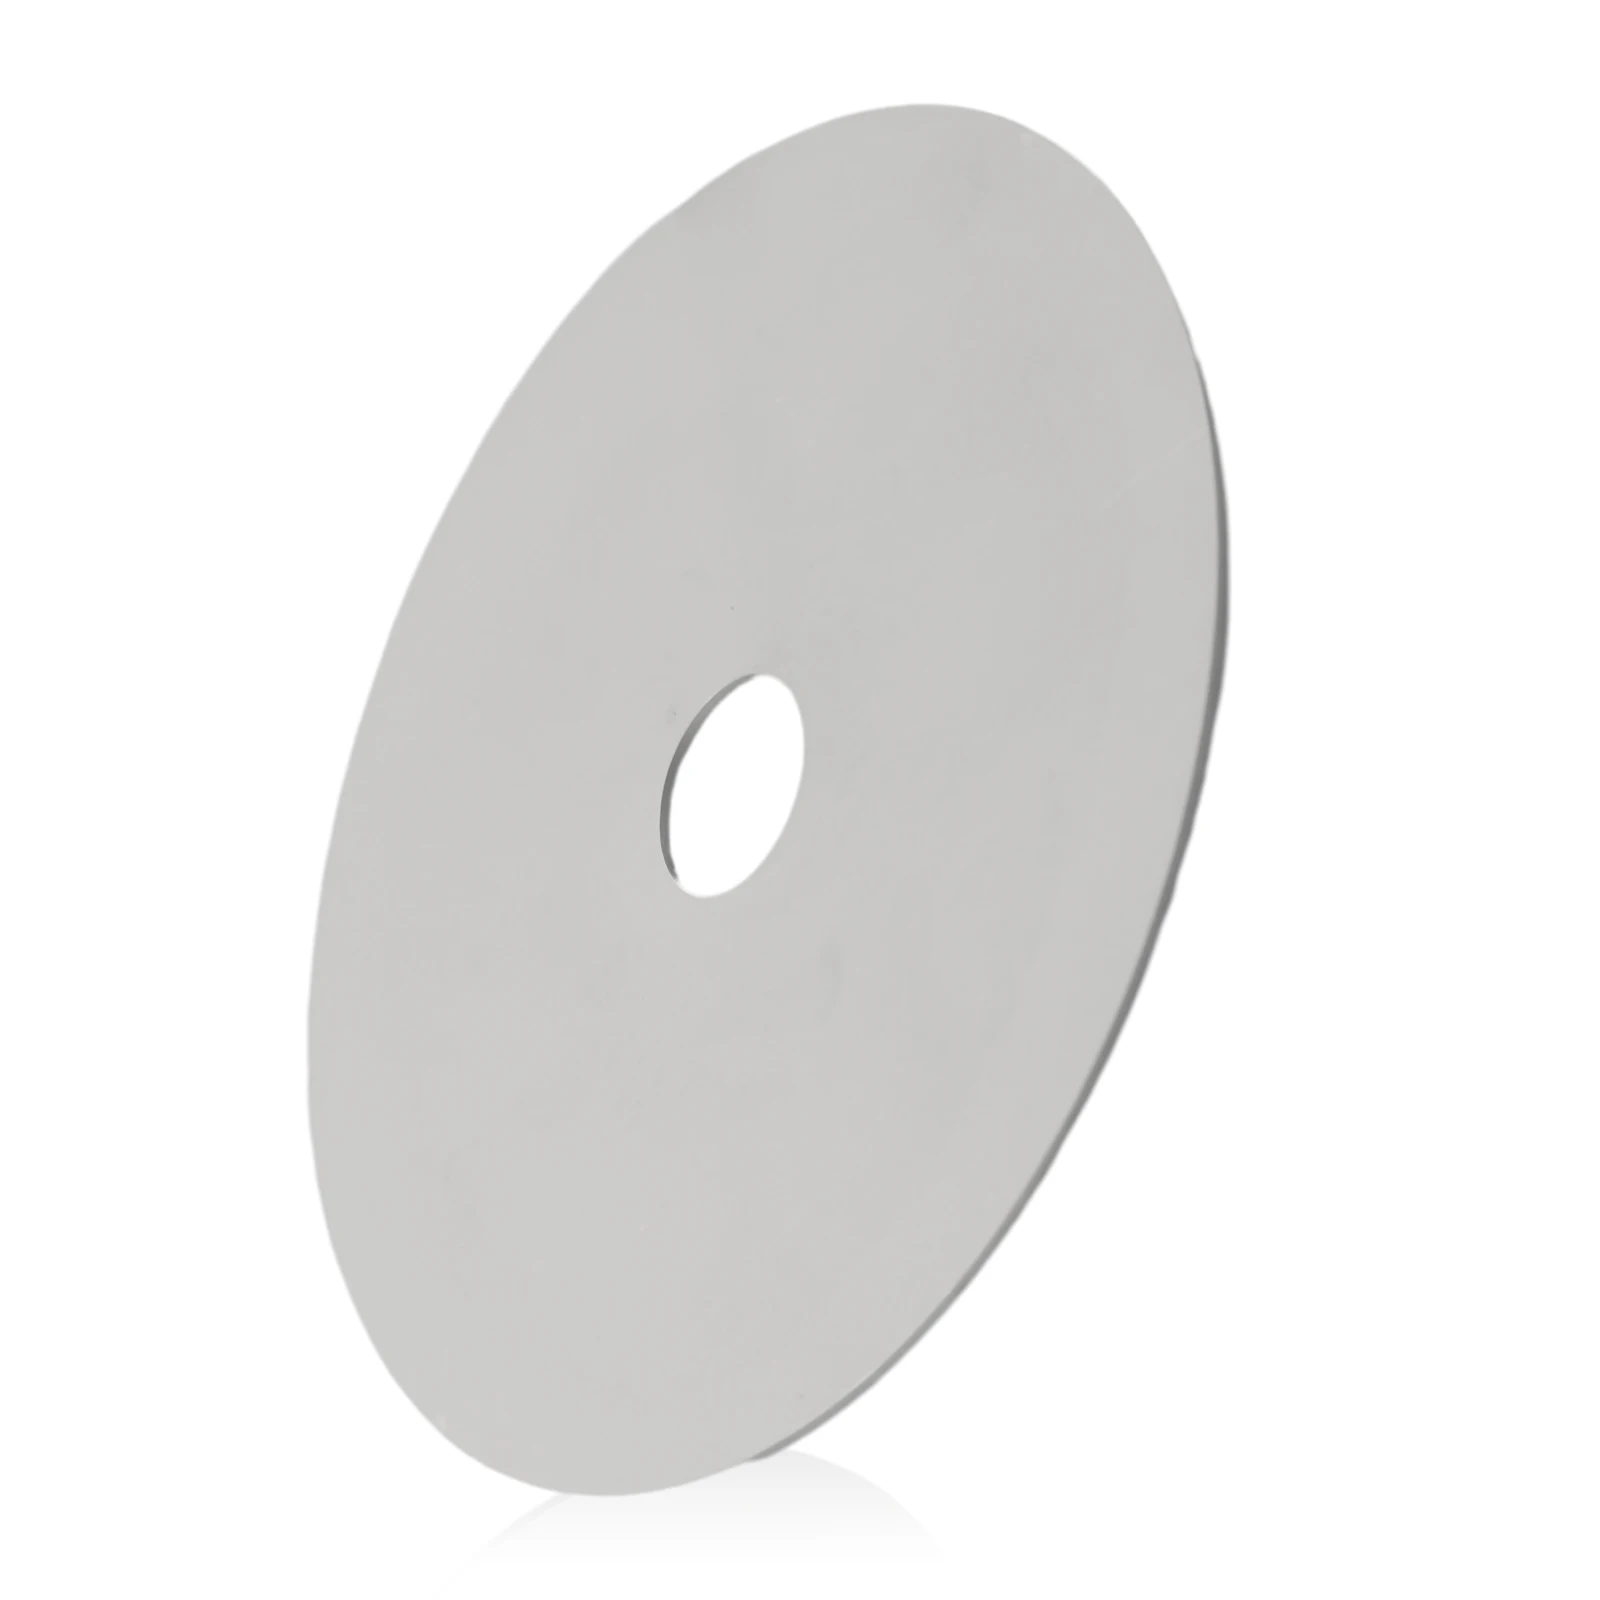 

Шлифовальный диск с алмазным покрытием 4 дюйма, 100 мм, зернистость 80-2000 #, плоский круглый диск с алмазным покрытием, шлифовальный/полировальный диск, электроинструменты